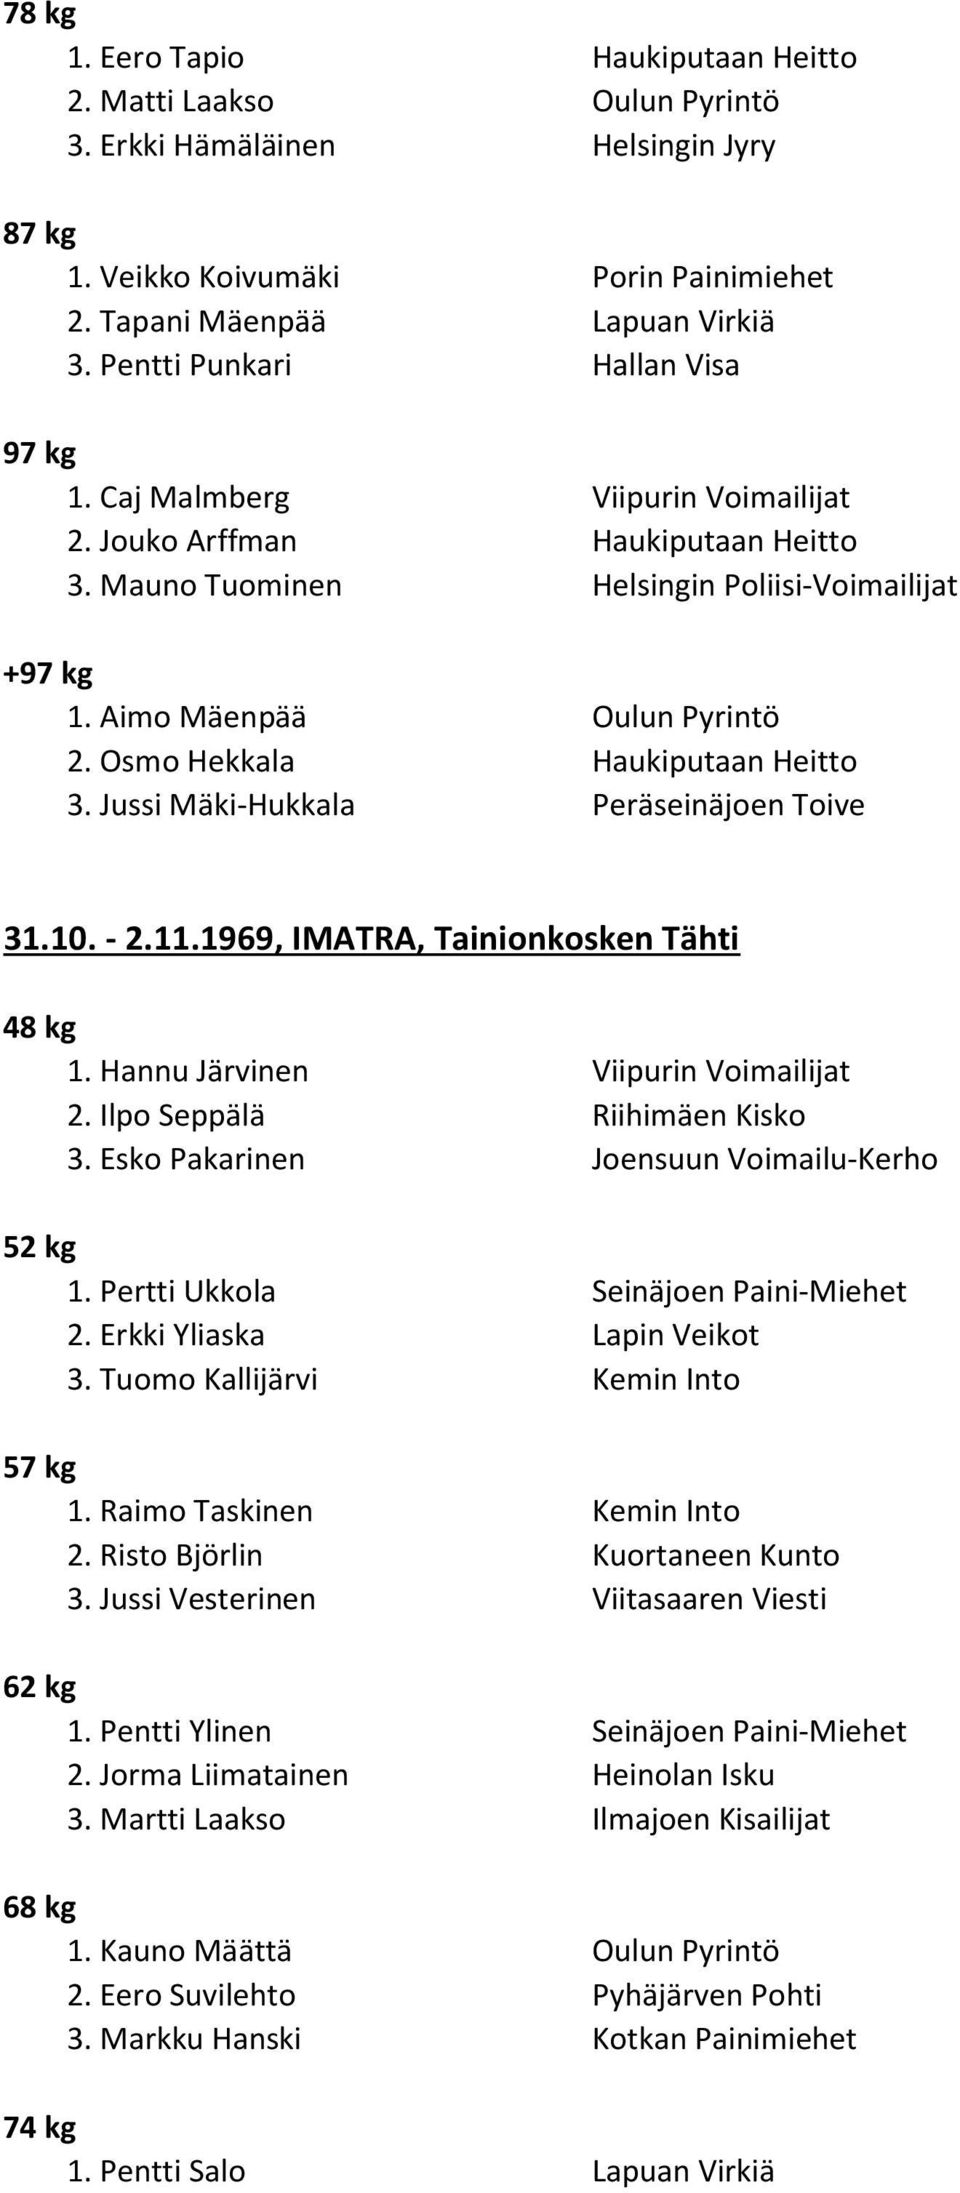 10. - 2.11.1969, IMATRA, Tainionkosken Tähti 48 kg 1. Hannu Järvinen Viipurin Voimailijat 2. Ilpo Seppälä Riihimäen Kisko 3. Esko Pakarinen Joensuun Voimailu-Kerho 1.